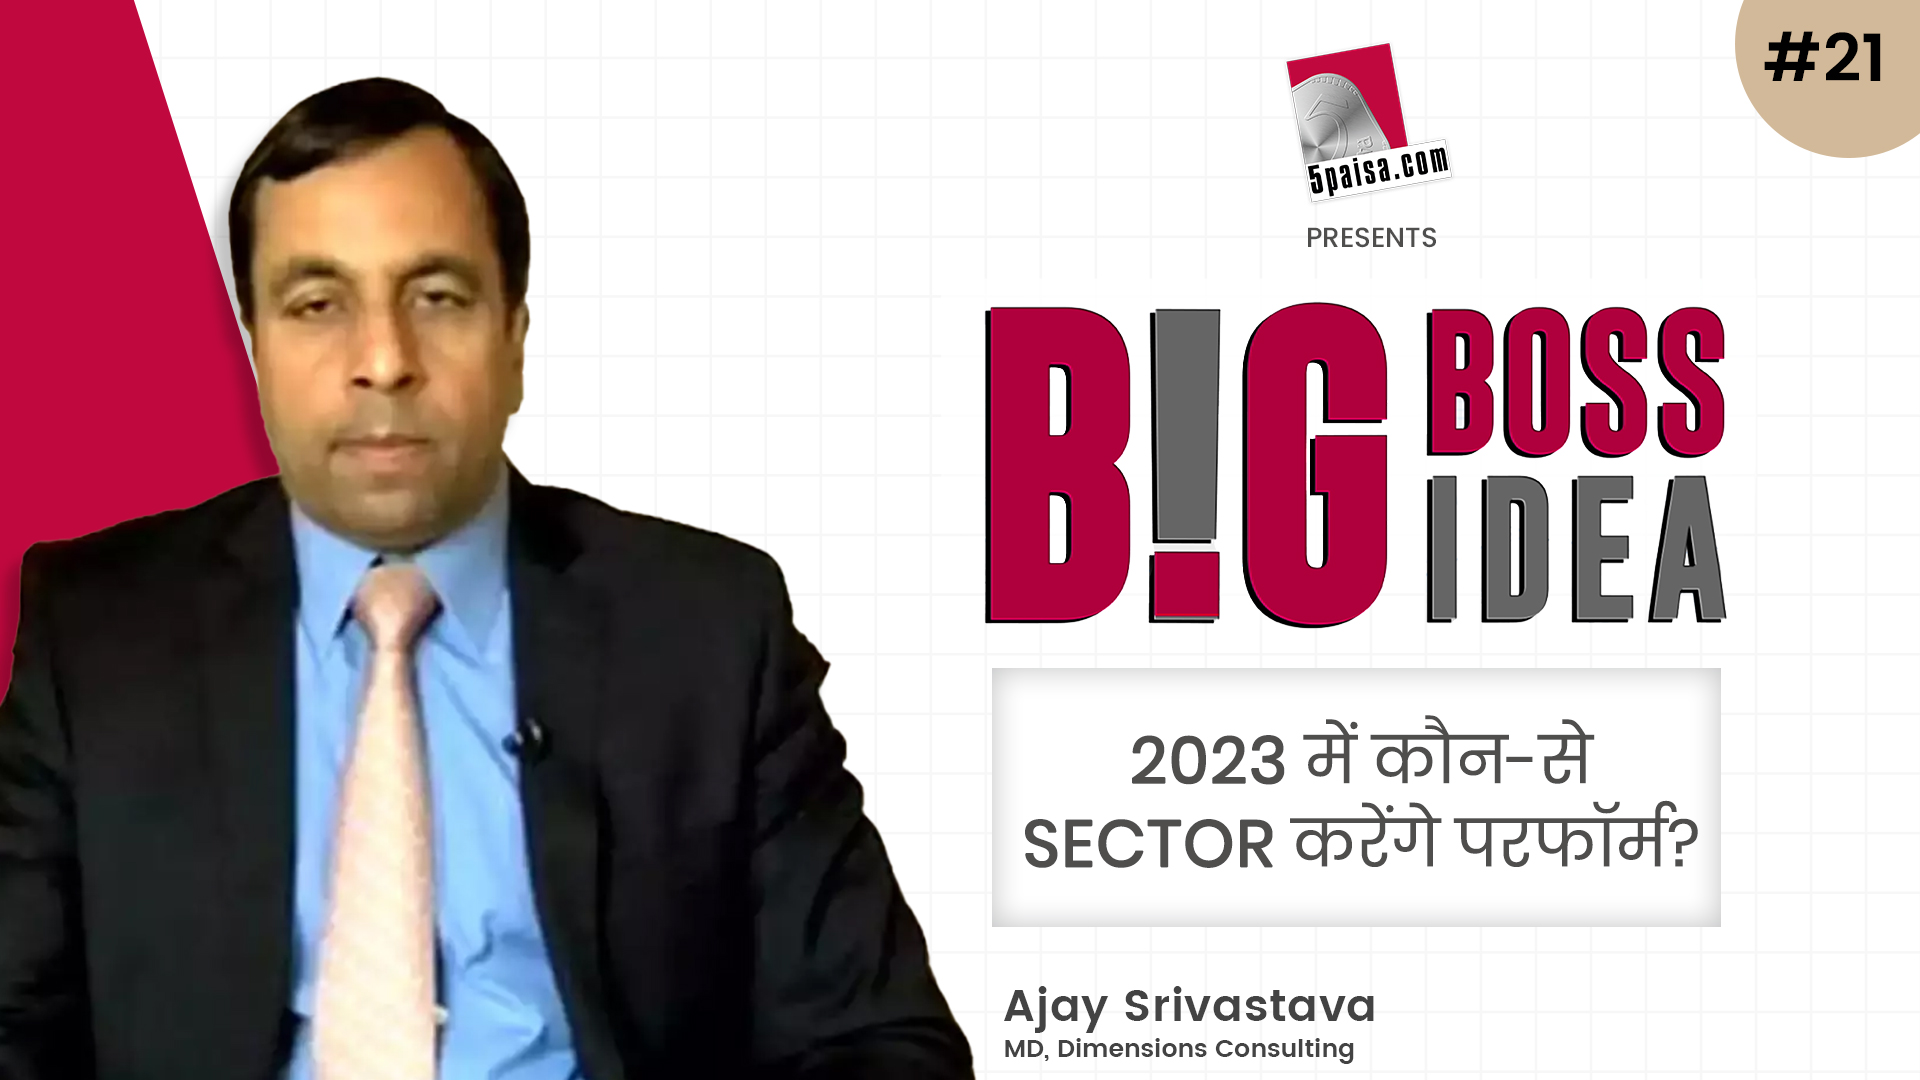 Big Boss, Big Idea EP 21- 2023 में कौन-से सेक्टर करेंगे परफॉर्म? जानिए Ajay Srivastava से